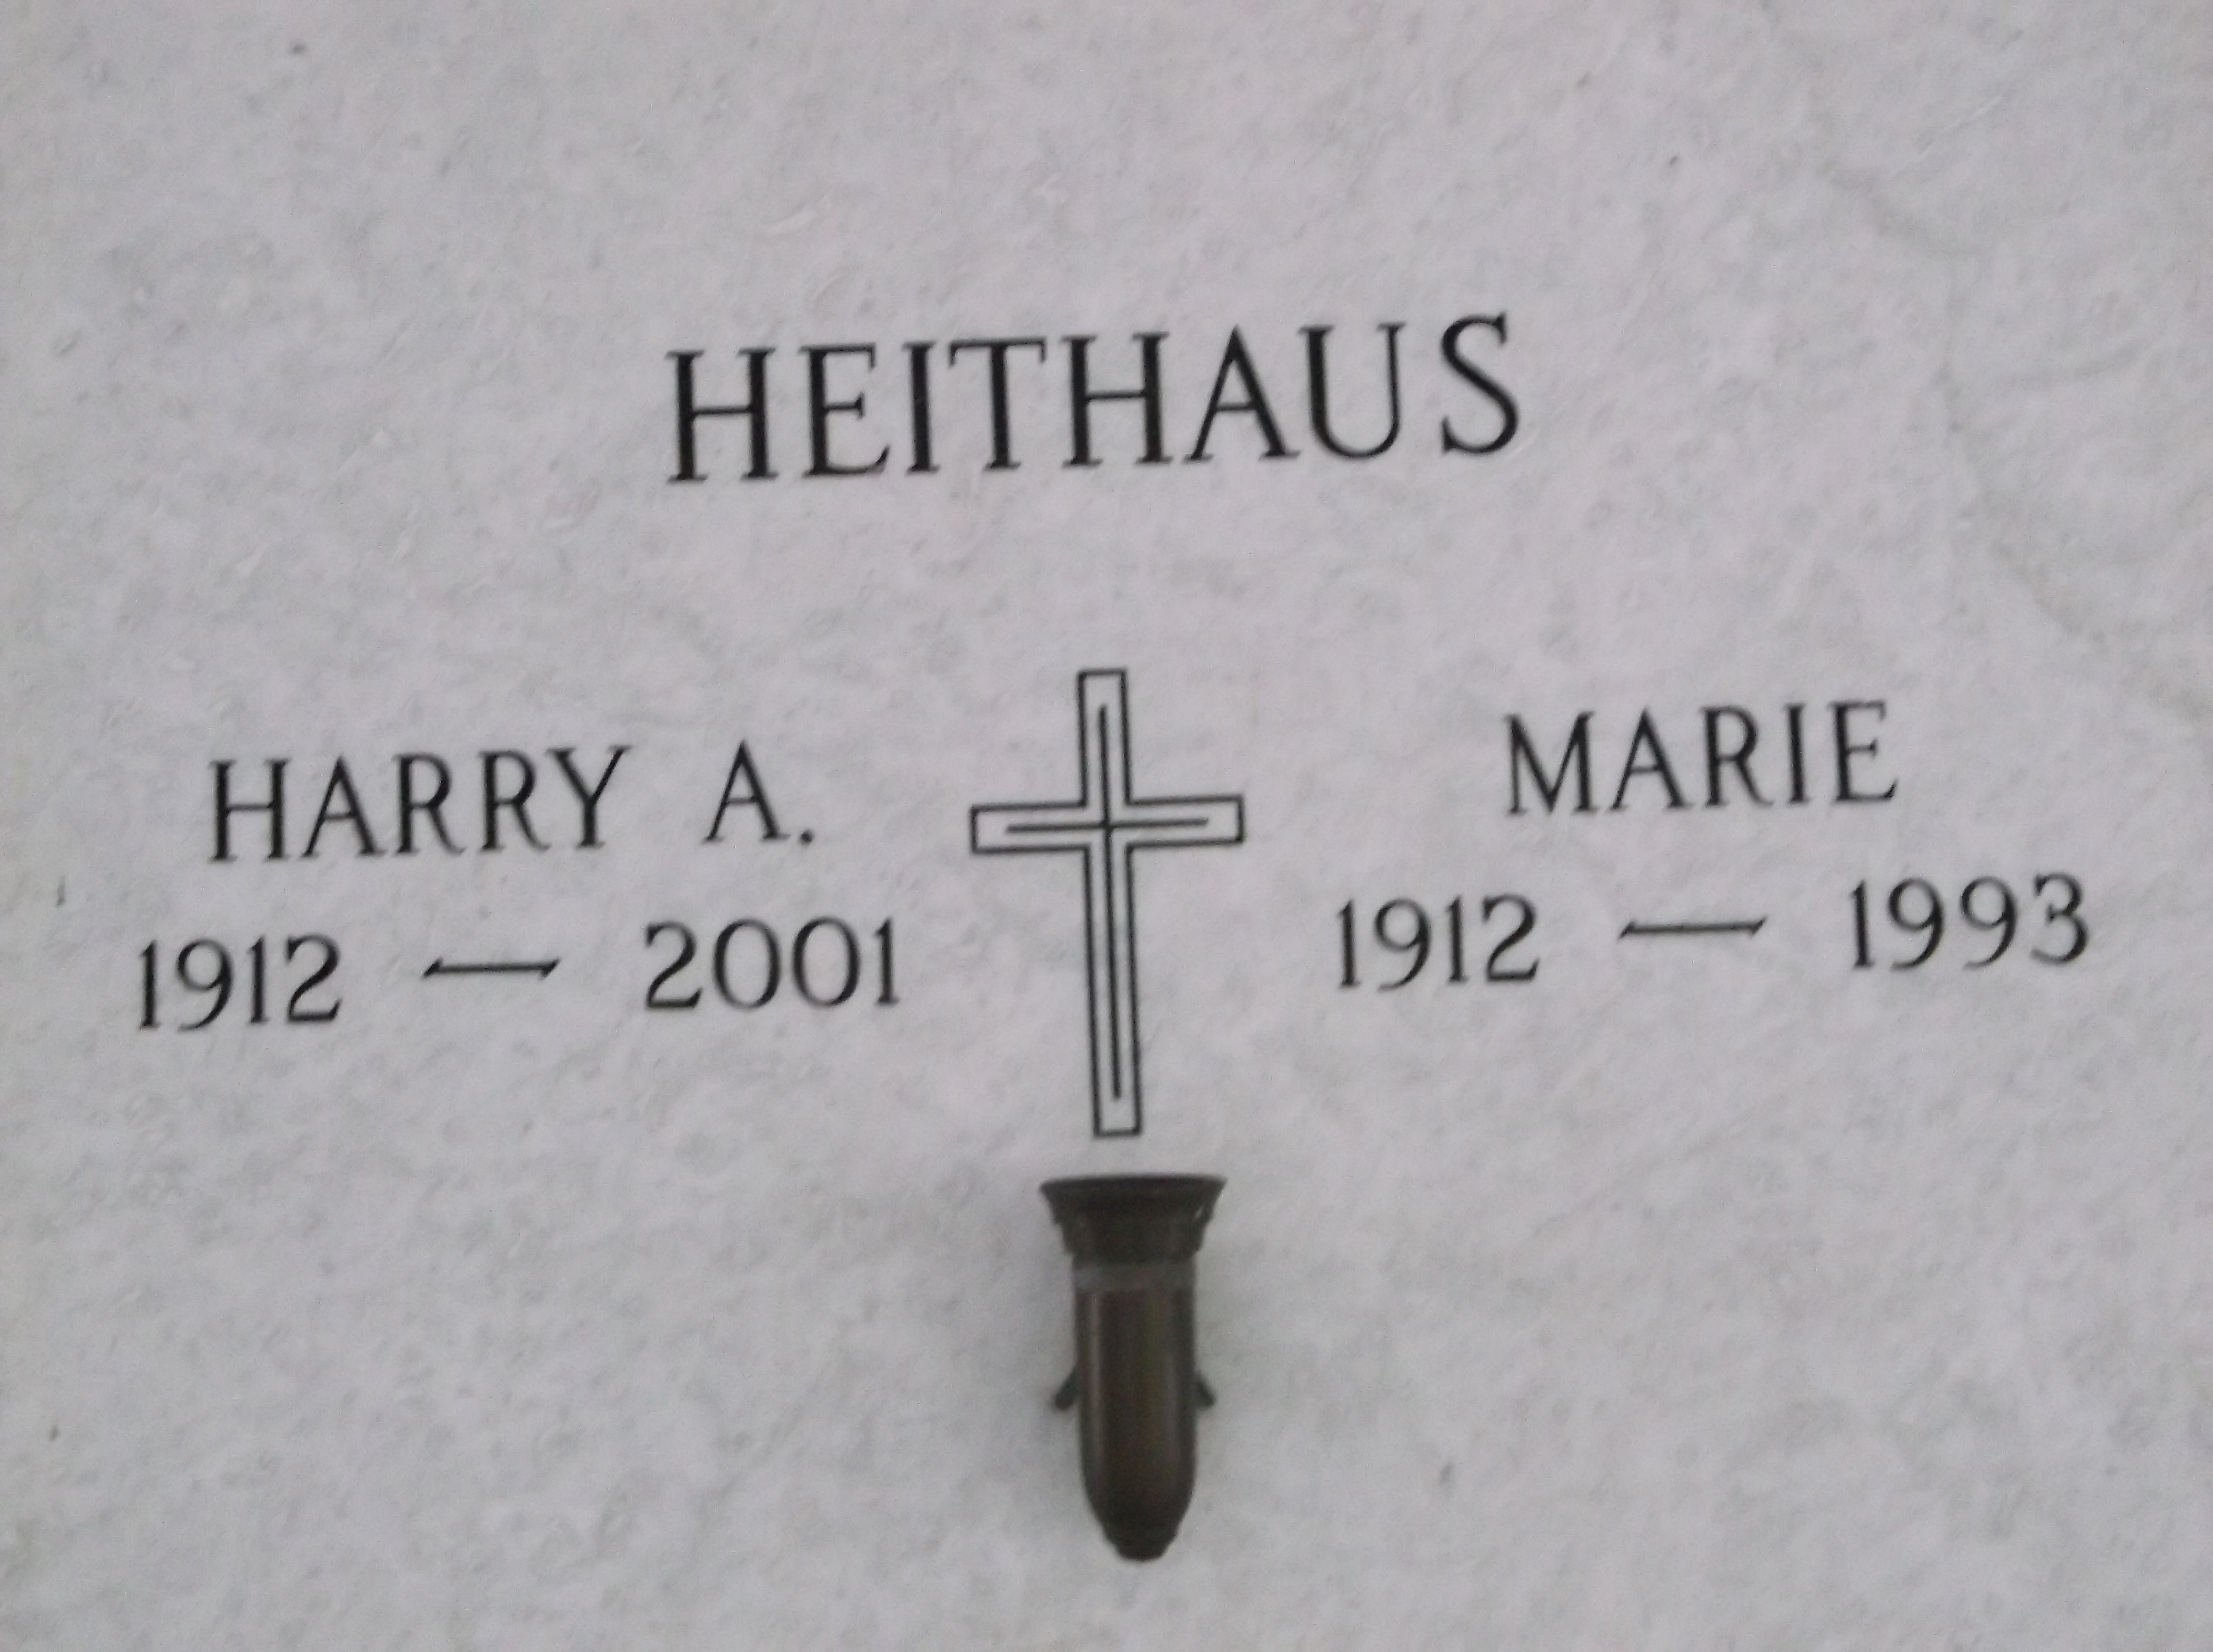 Marie Heithaus